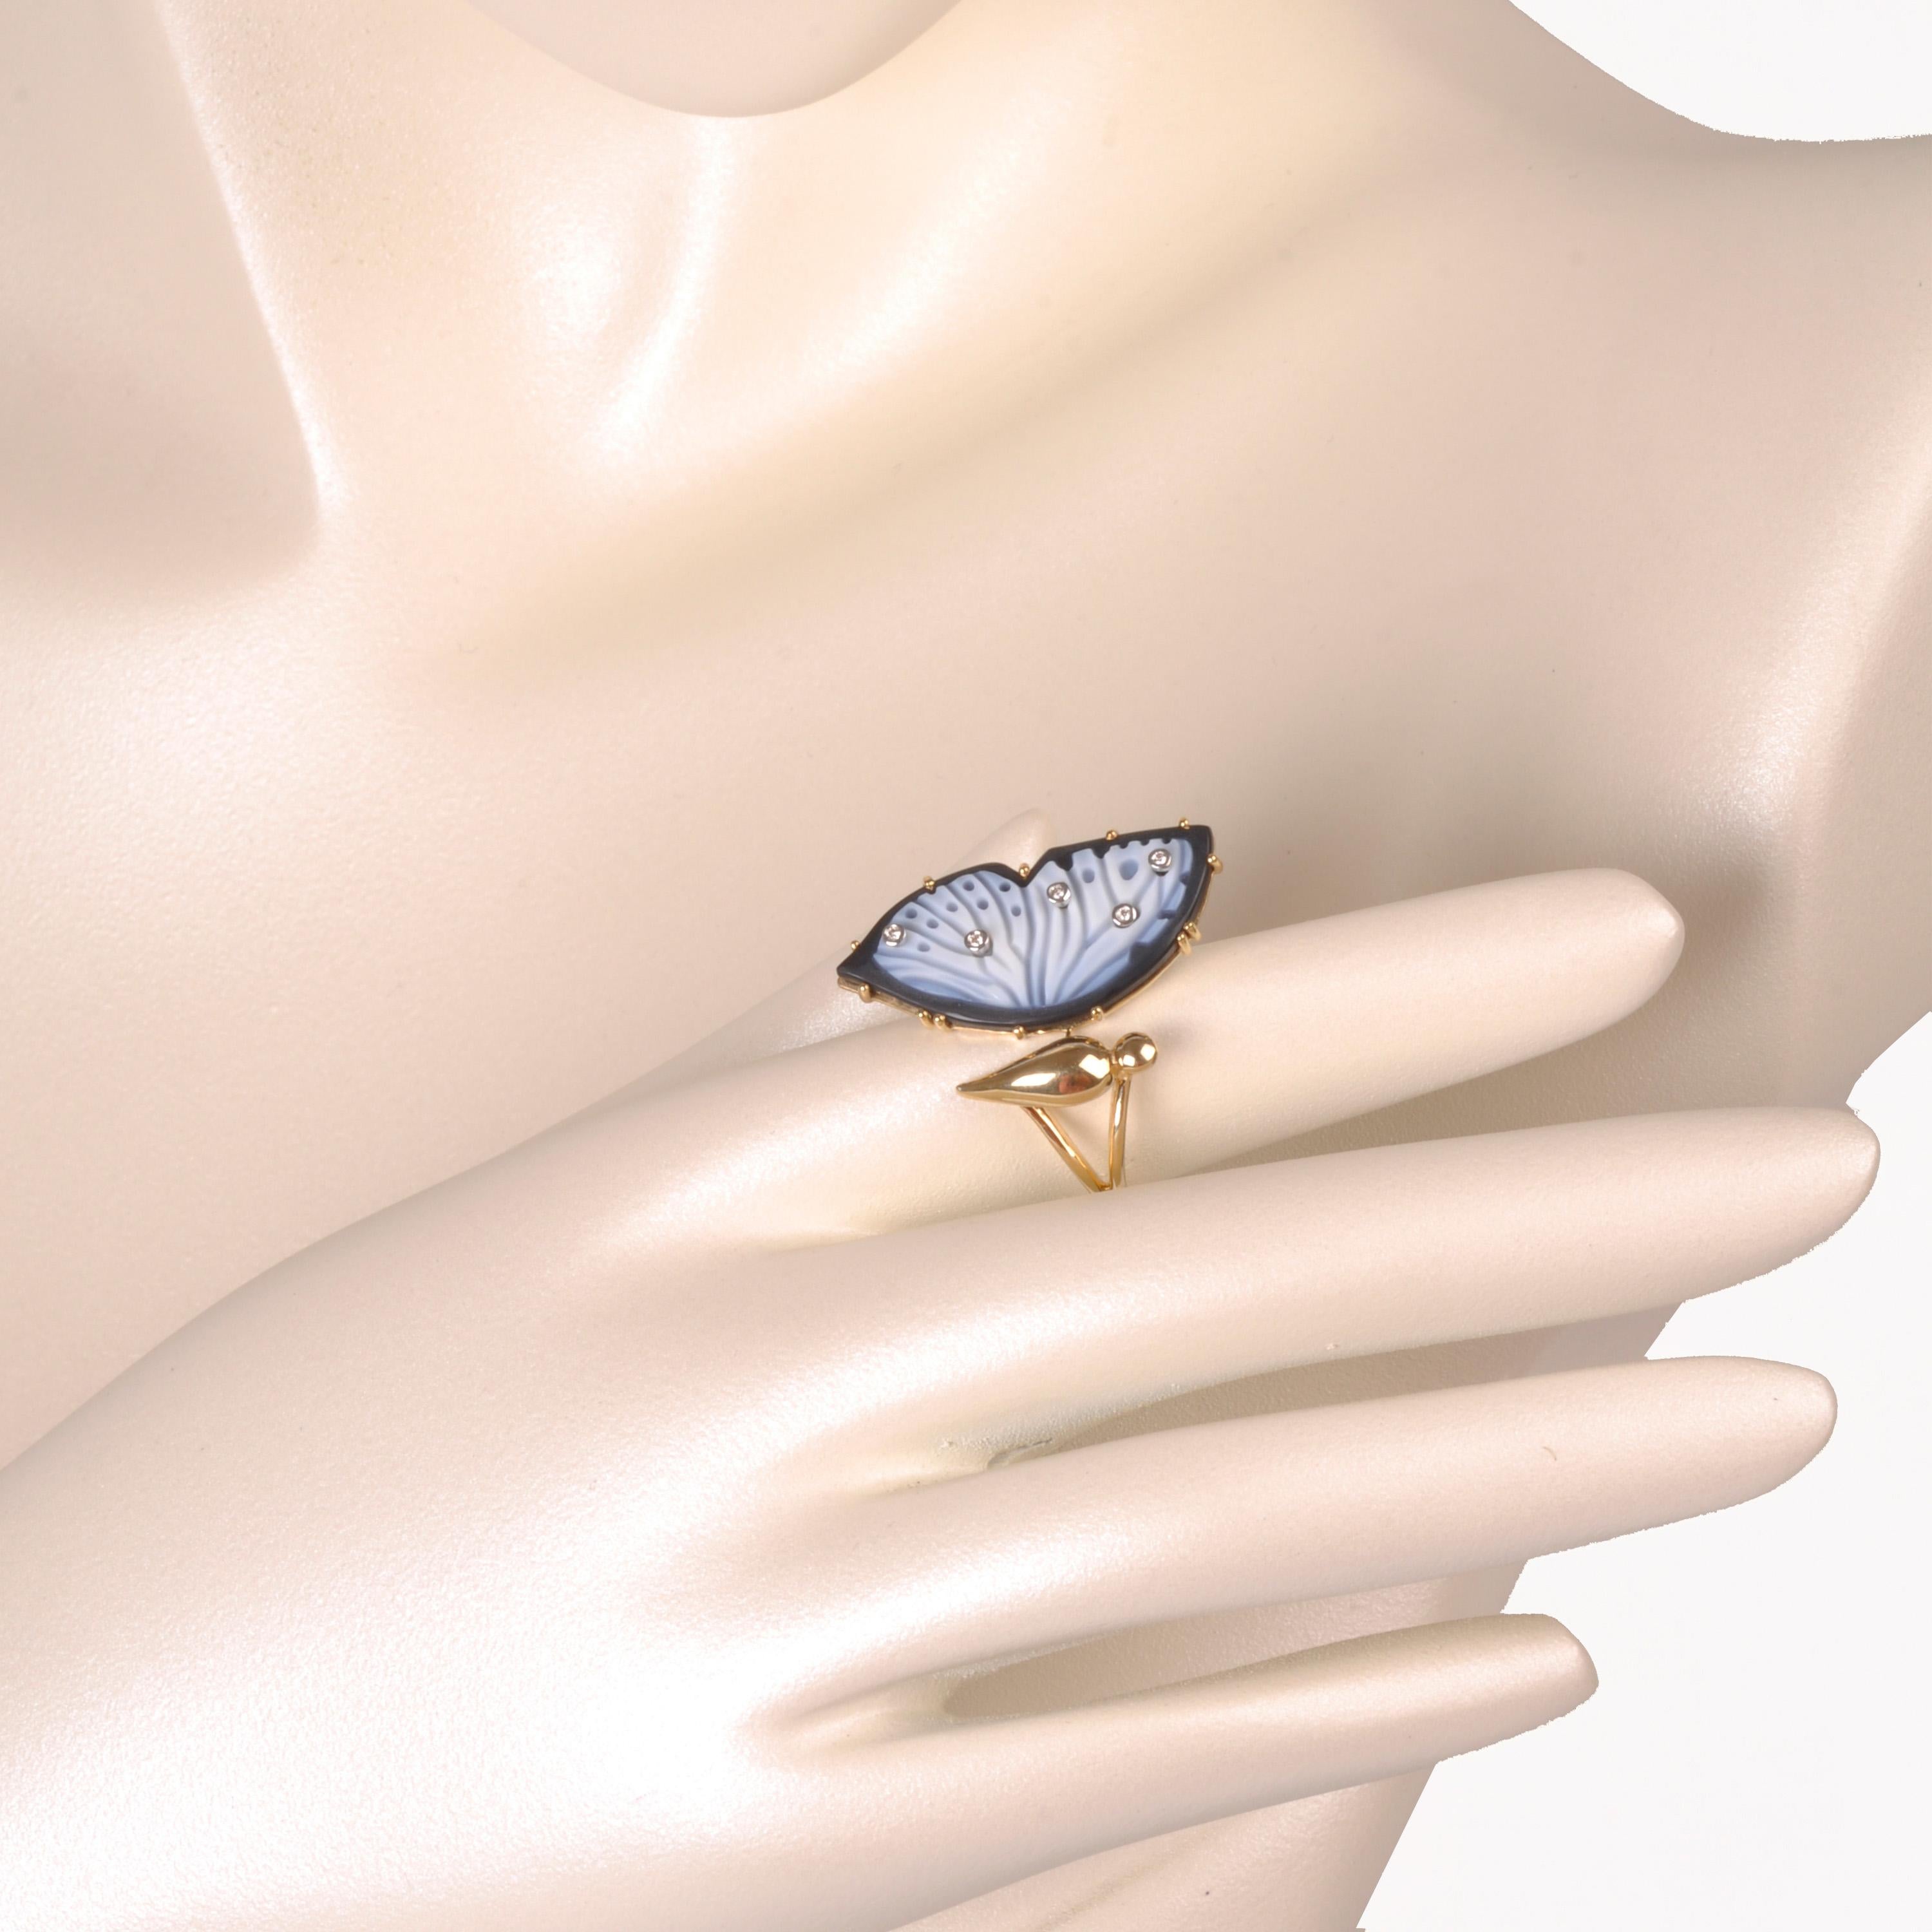 Cette bague papillon diamant en agate naturelle en or 18K est un symbole de transformation et de grâce. Cette bague exquise capture l'élégance délicate d'un papillon en vol, rappelant les possibilités illimitées offertes par le changement.

Le corps